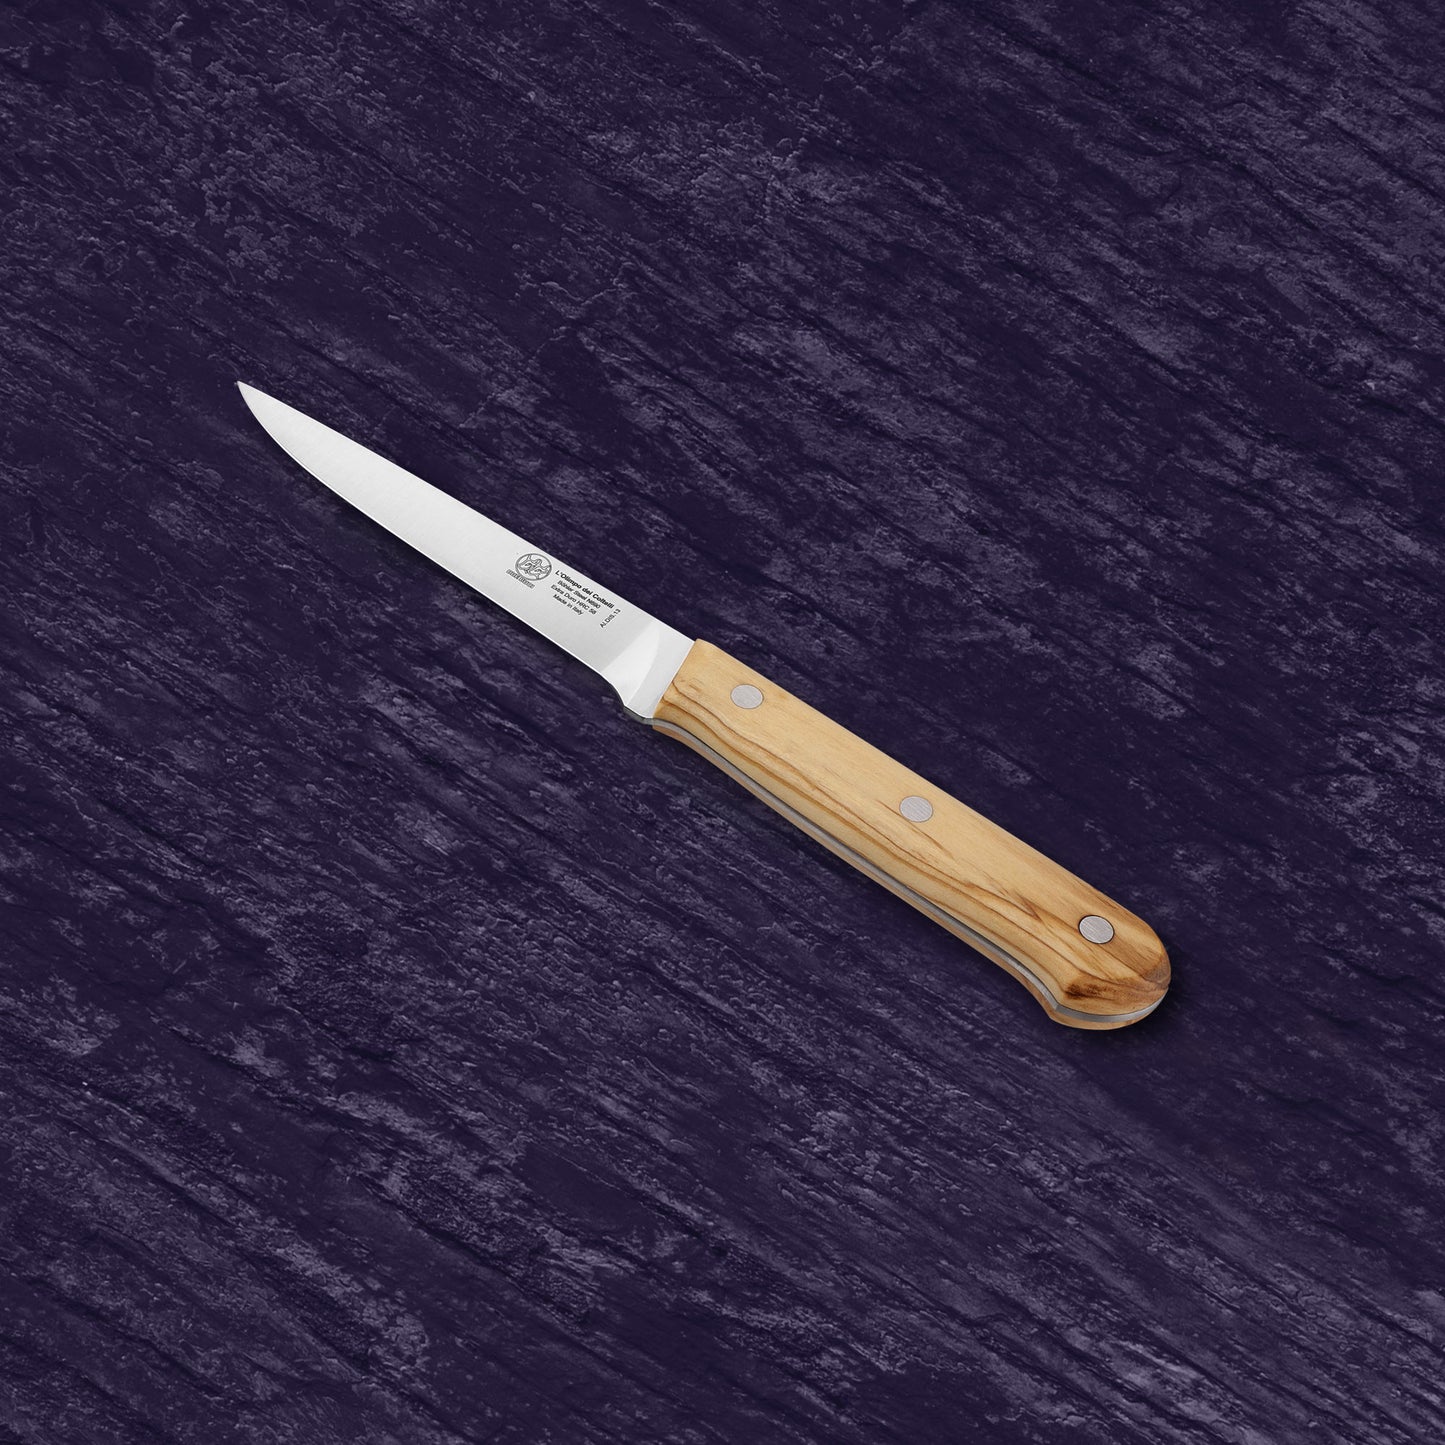 
                  
                    Boning Knife - Blade 5.12” - N690 Stainless Steel - Hrc 58 - Olive Wood Handle
                  
                